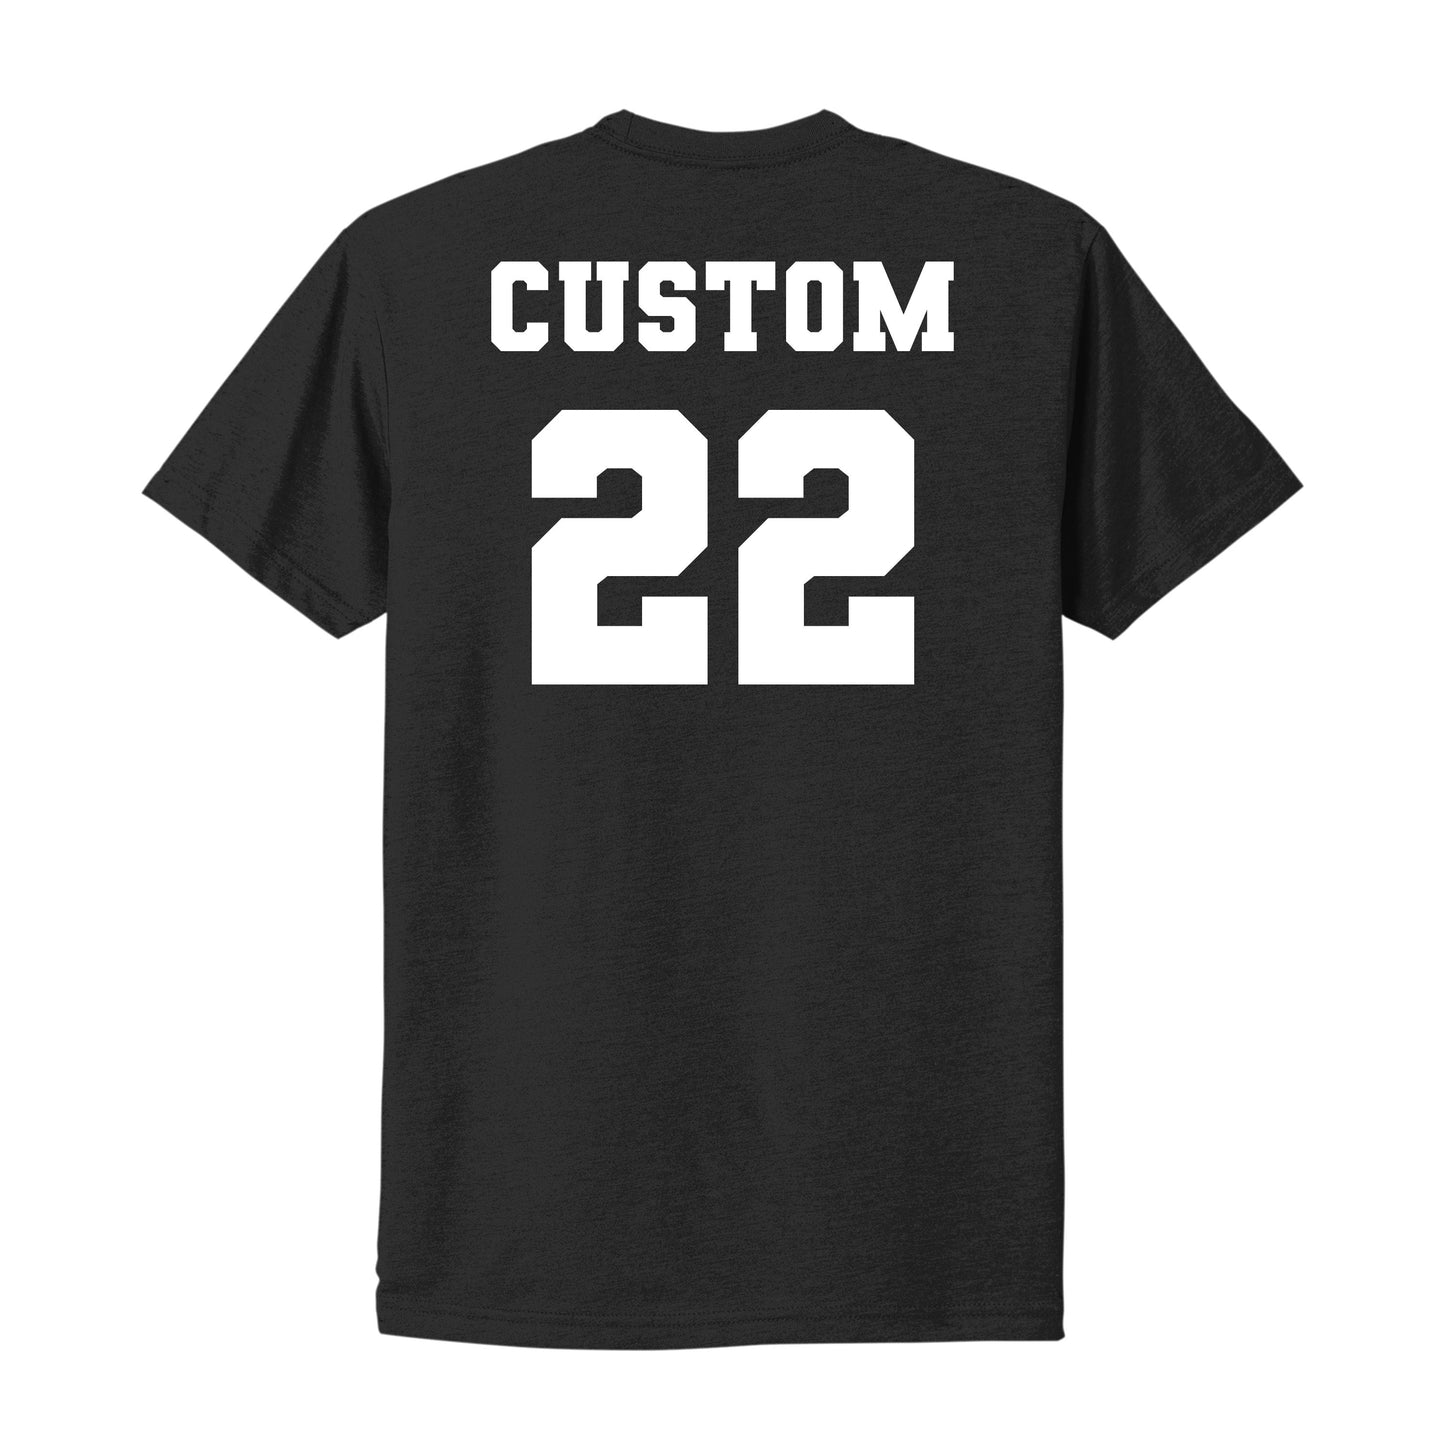 SJ Baseball Stitches w/ Customization Option